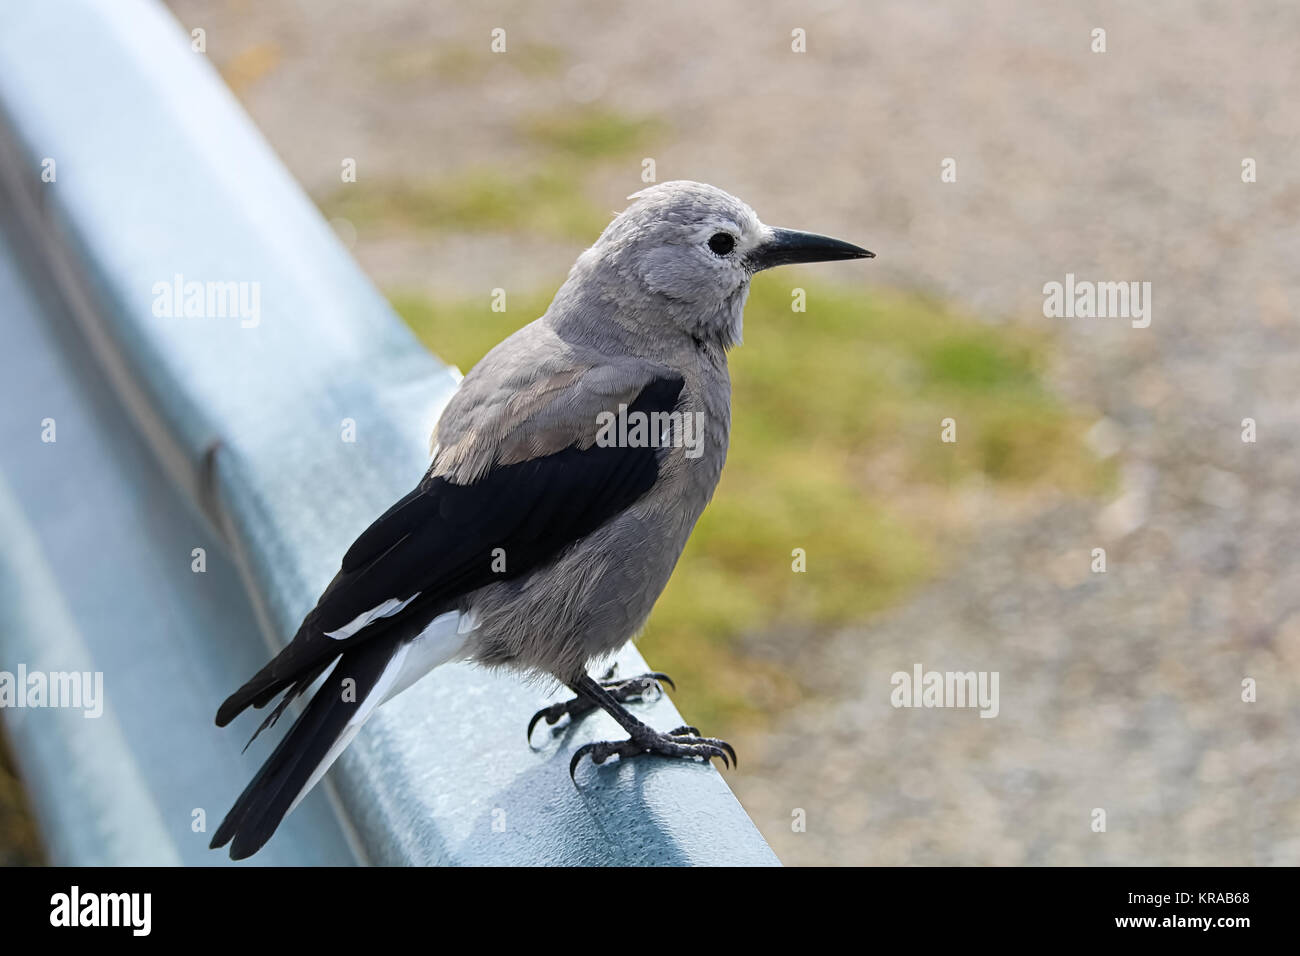 A Clark's Nutcracker bird sitting on a barrier rail. Stock Photo